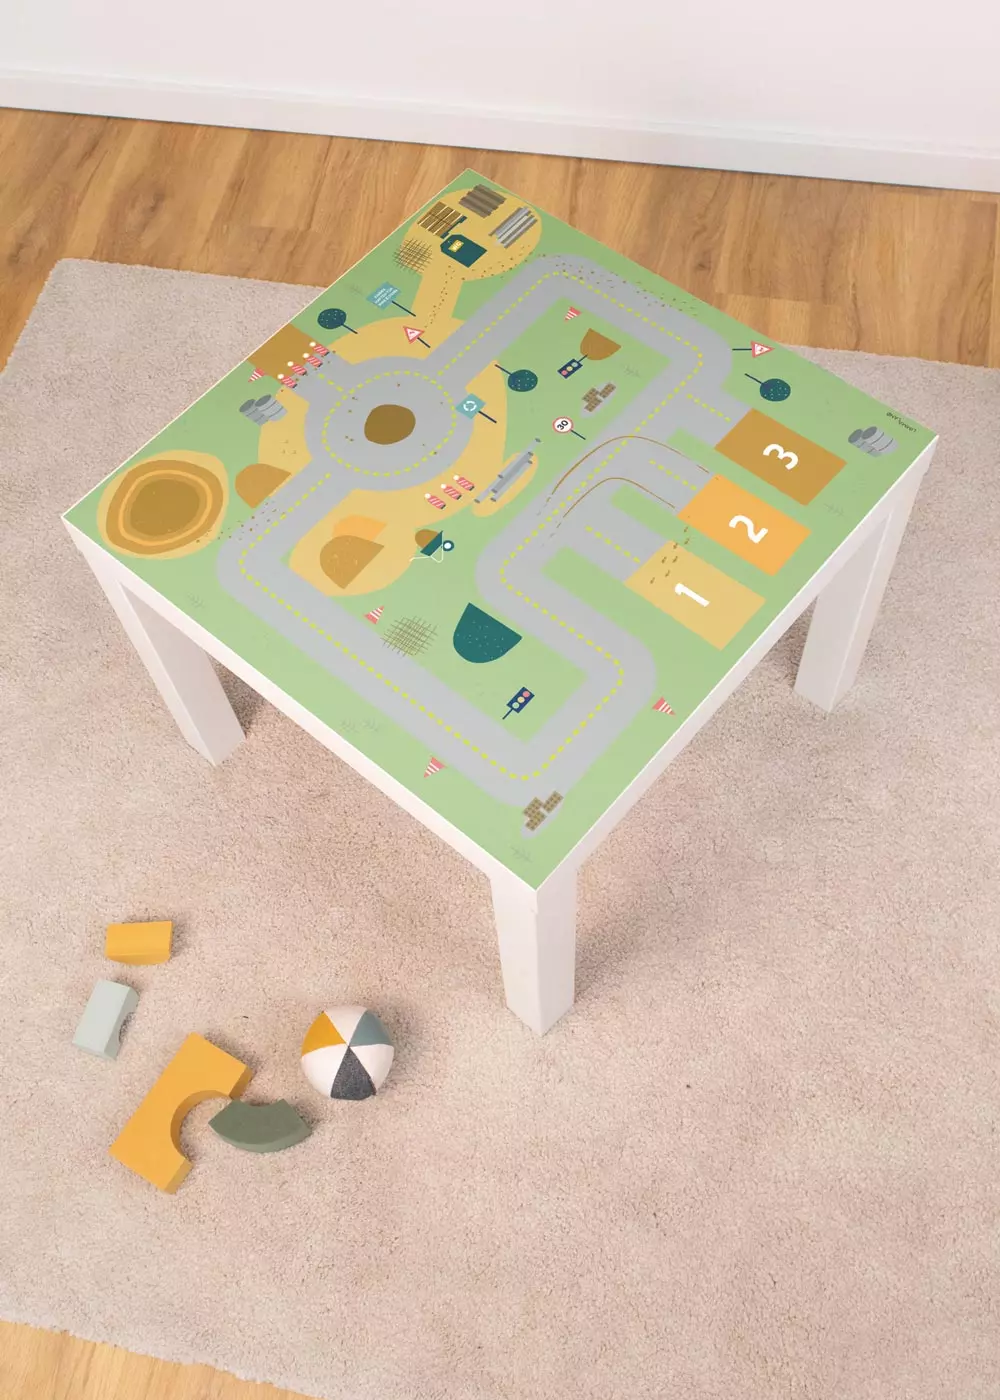 Klebefolie für Ikea Lack Tisch mit Baustelle Motiv